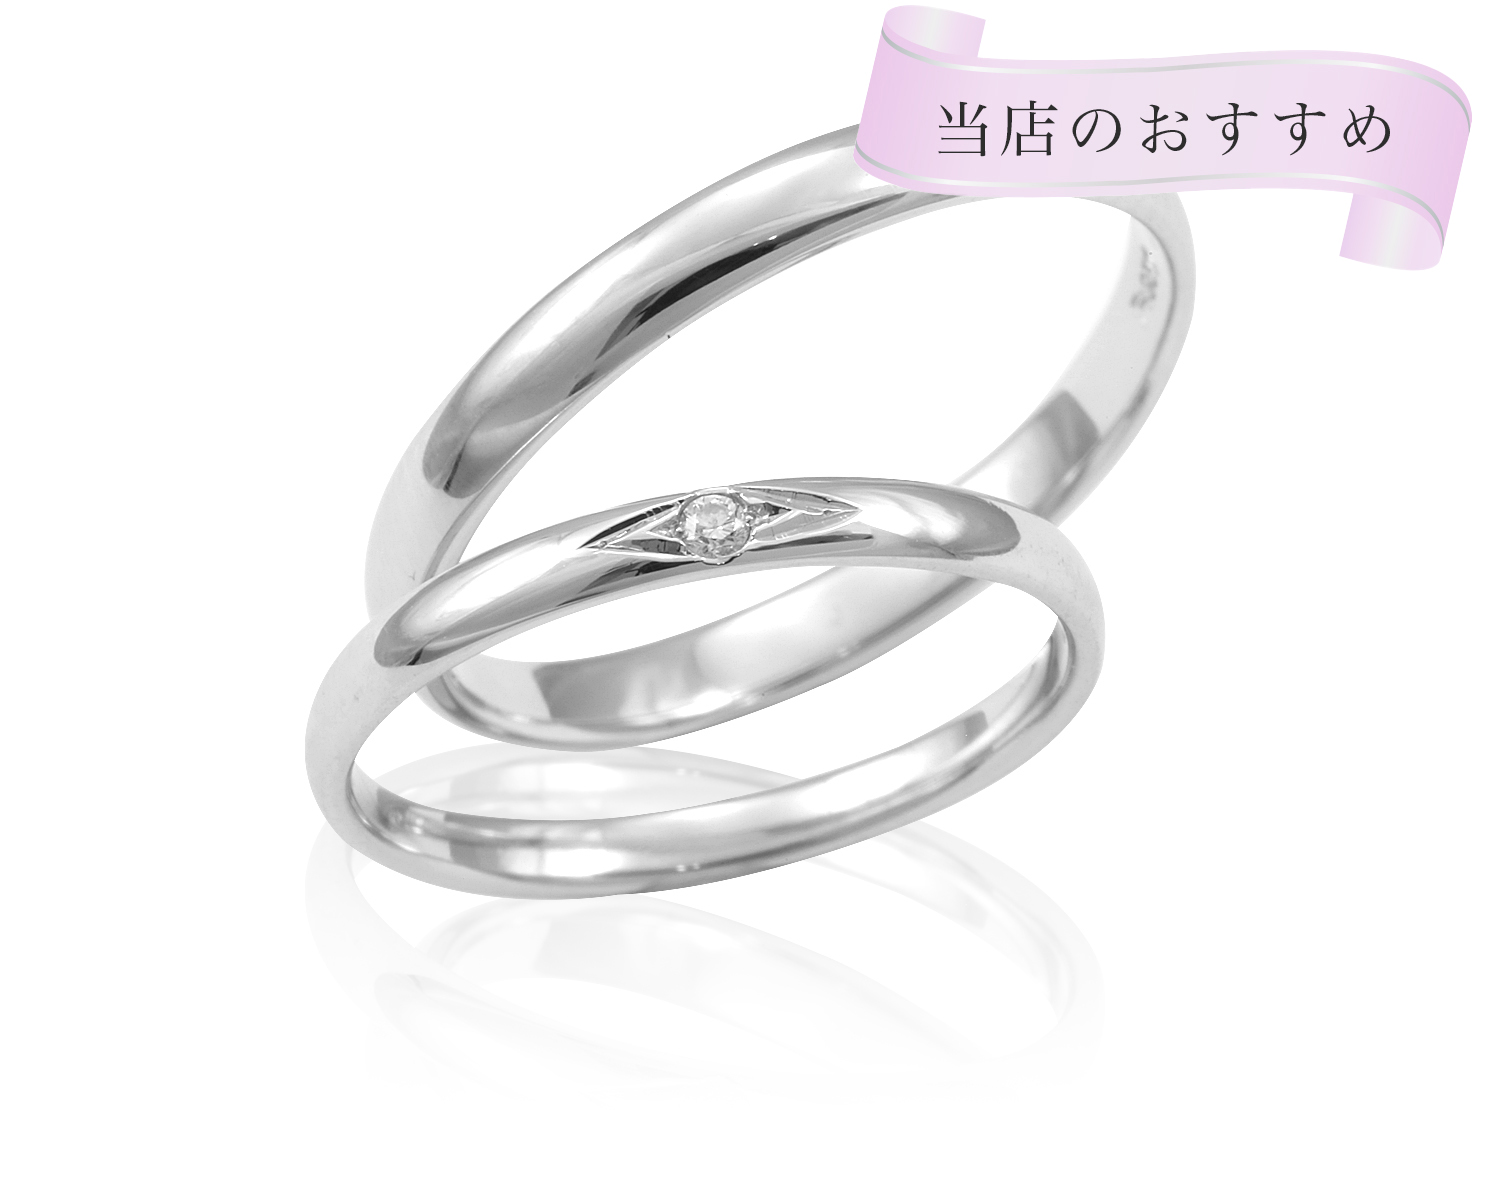 e.m marriage ring プラチナ 0.01ダイヤ入り 2本-